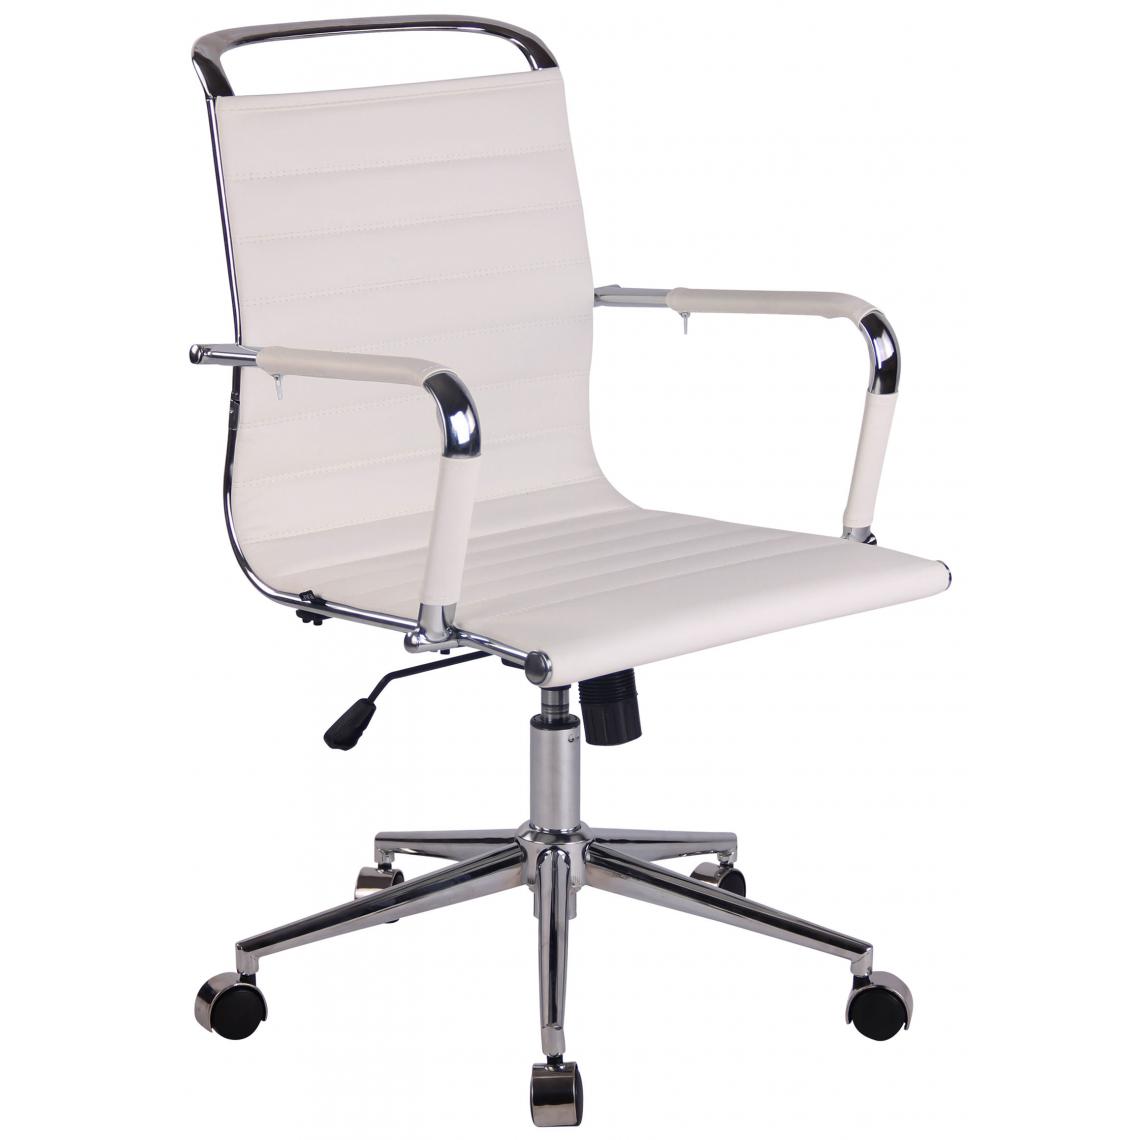 Icaverne - Superbe Chaise de bureau en simili cuir gamme Chi?in?u couleur blanc - Chaises